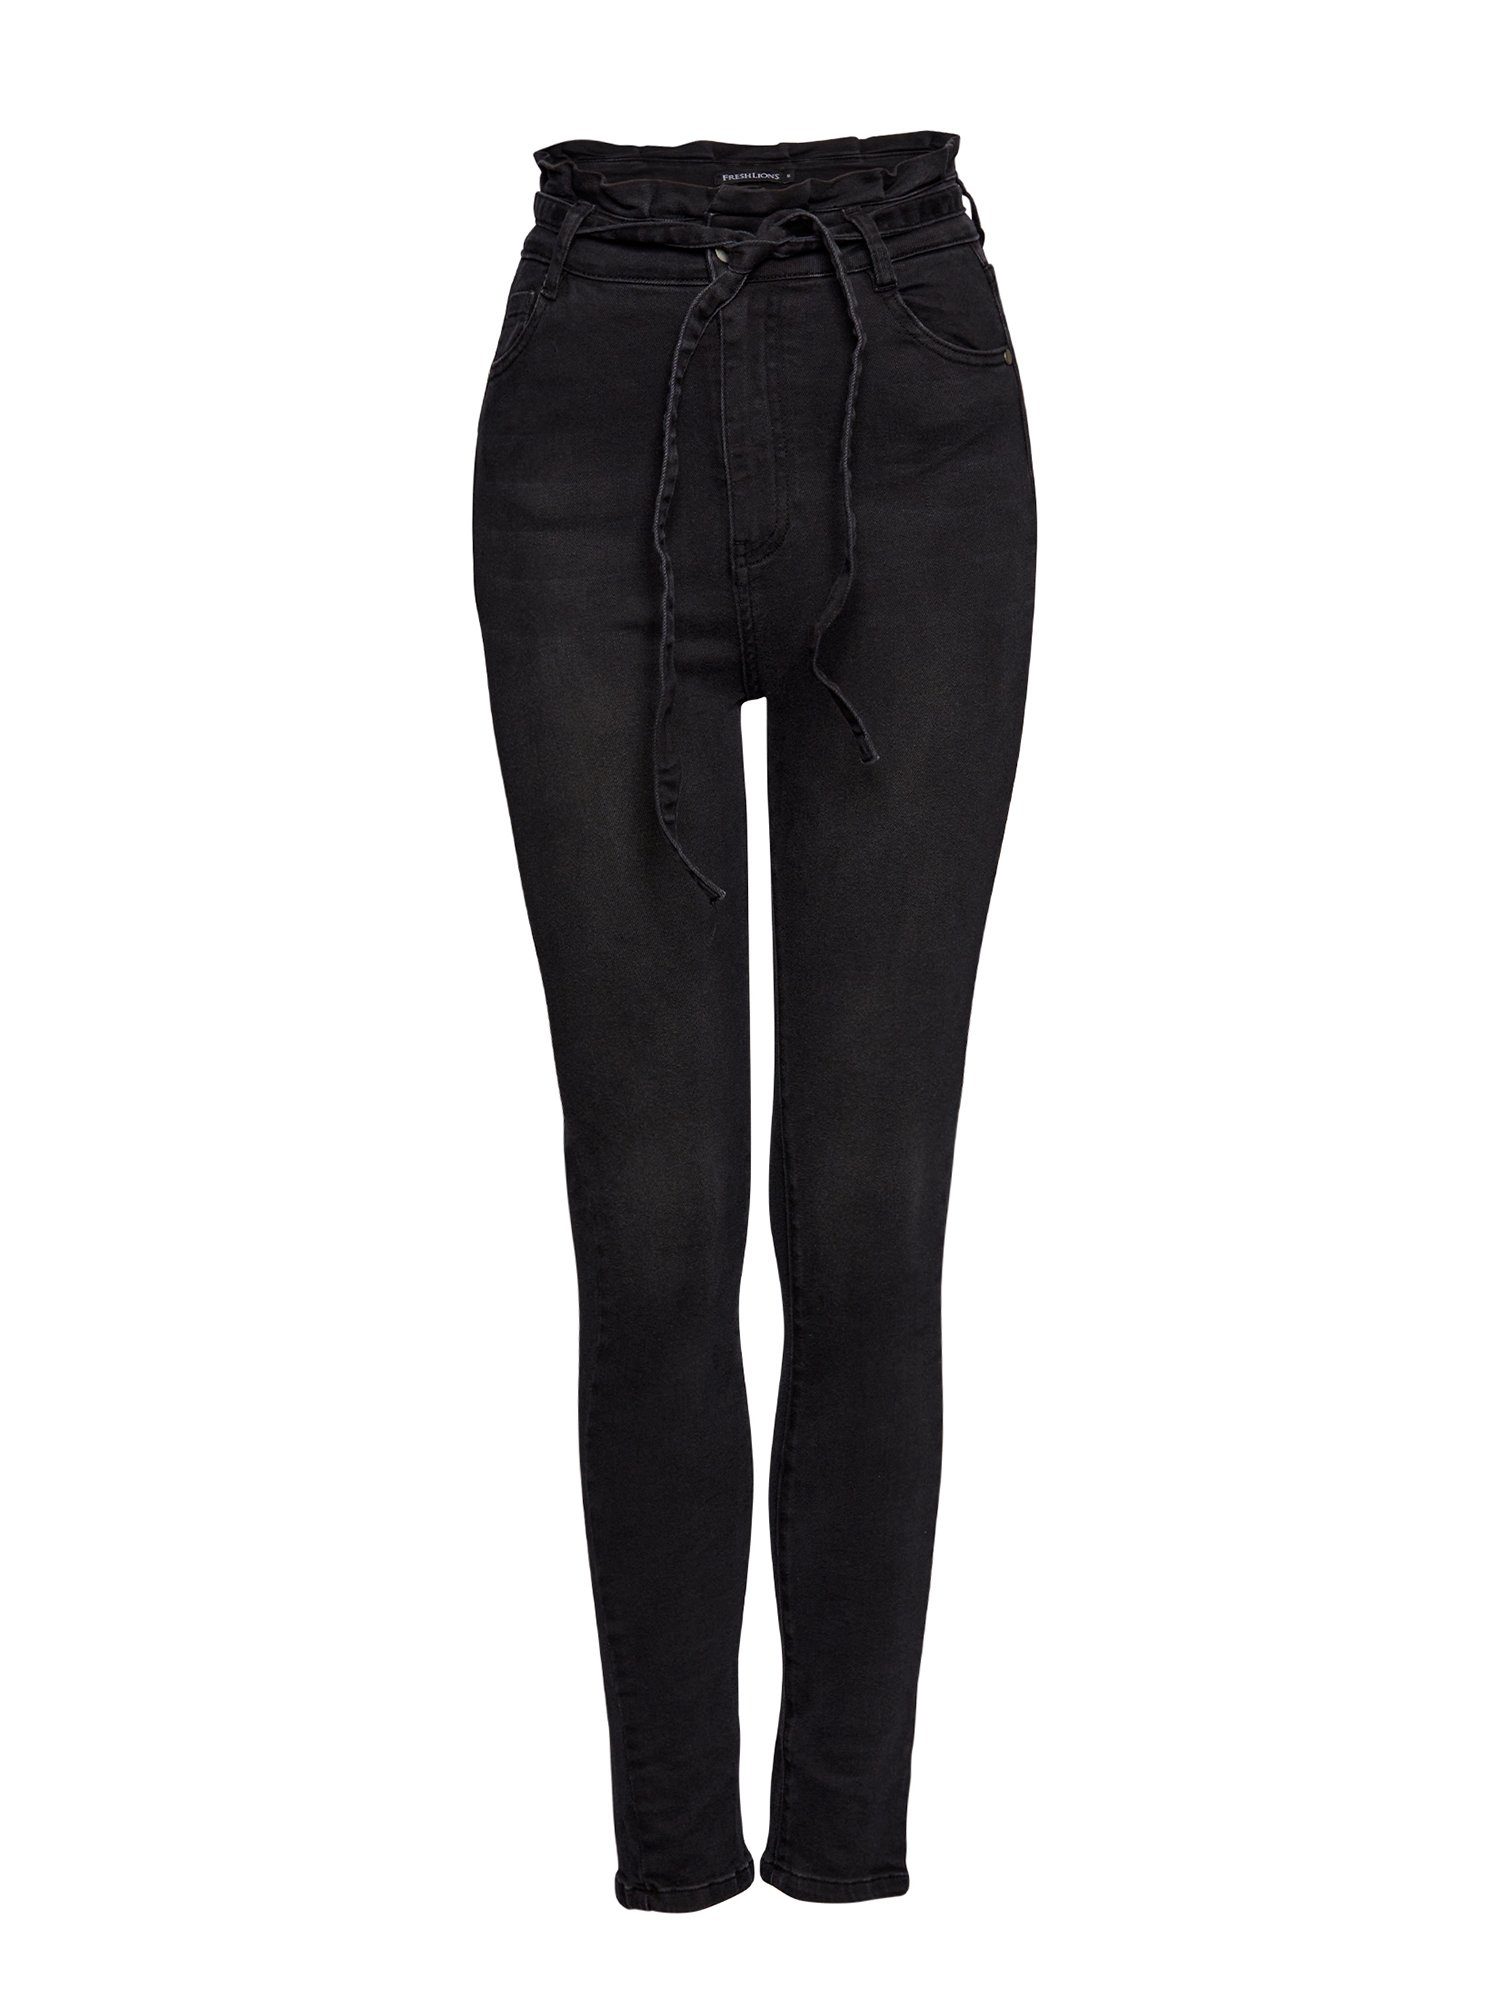 Jeans schwarz Bindegurt Freshlions mit High-waist-Jeans